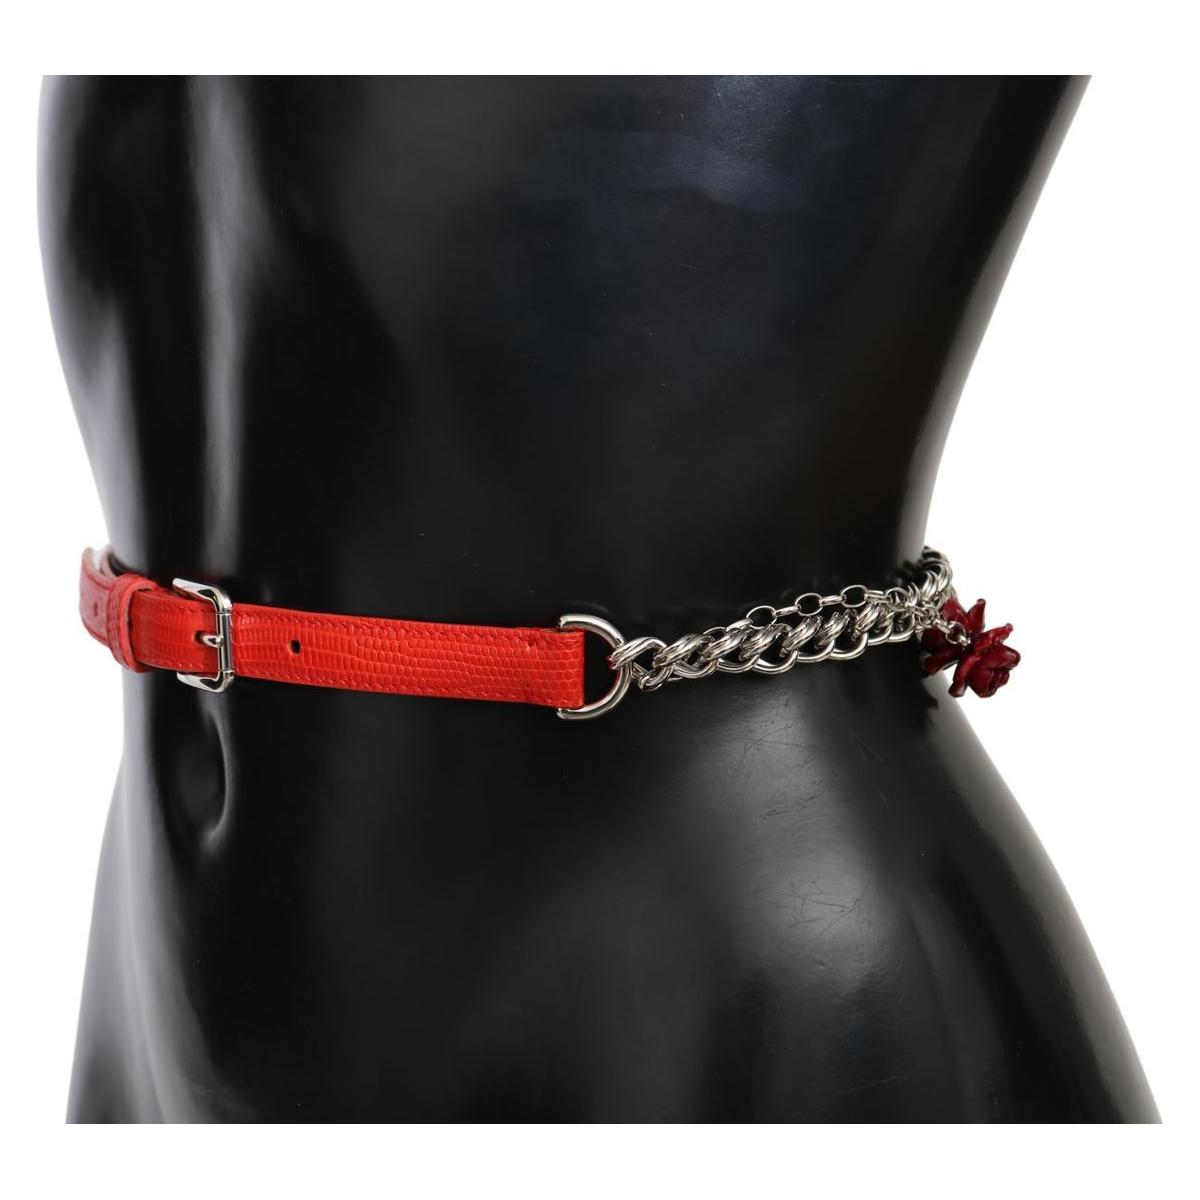 Dolce & Gabbana Elegant Floral Rose Waist Belt in Vibrant Red Belt red-leather-roses-floral-silver-waist-belt IMG_9988-66ee5f4a-2f6.jpg